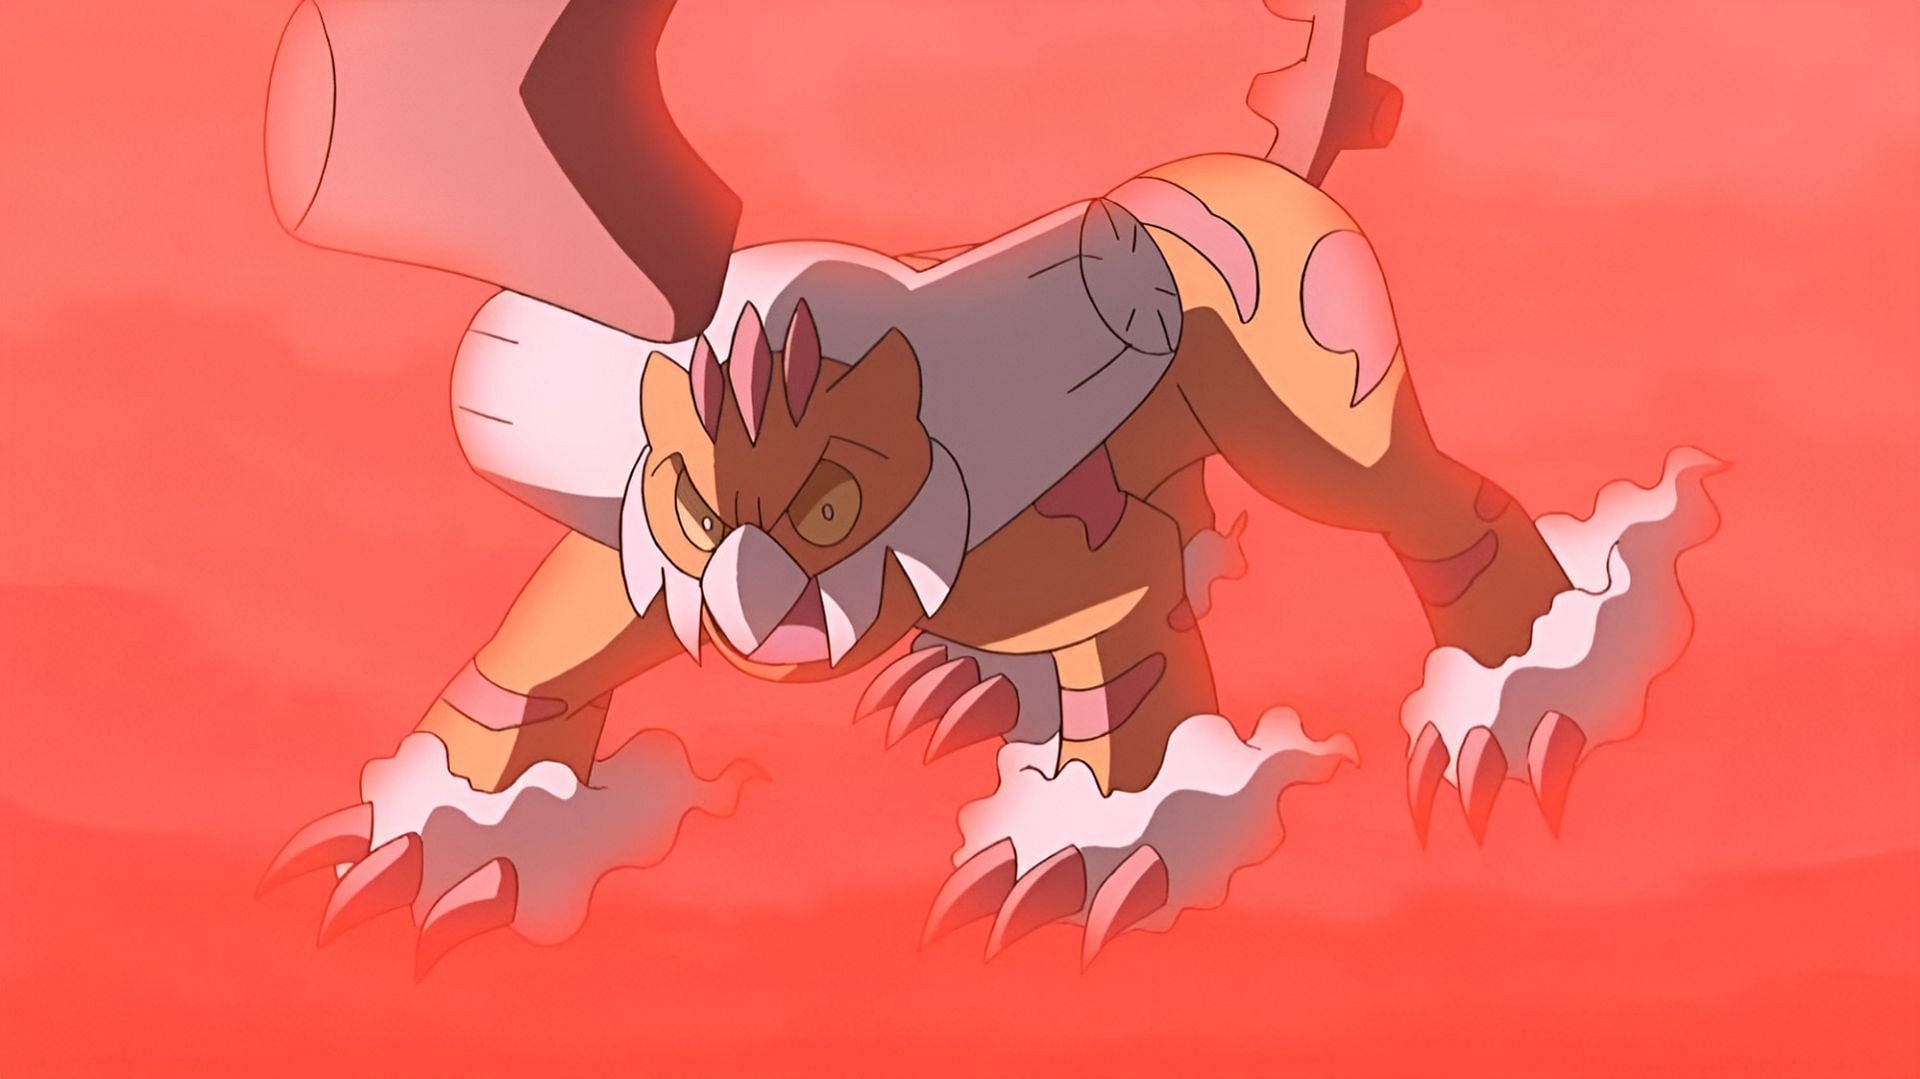 Therian Landorus può dare problemi a Electric Emboar nei raid Pokemon Scarlet e Violet (Immagine tramite The Pokemon Company)